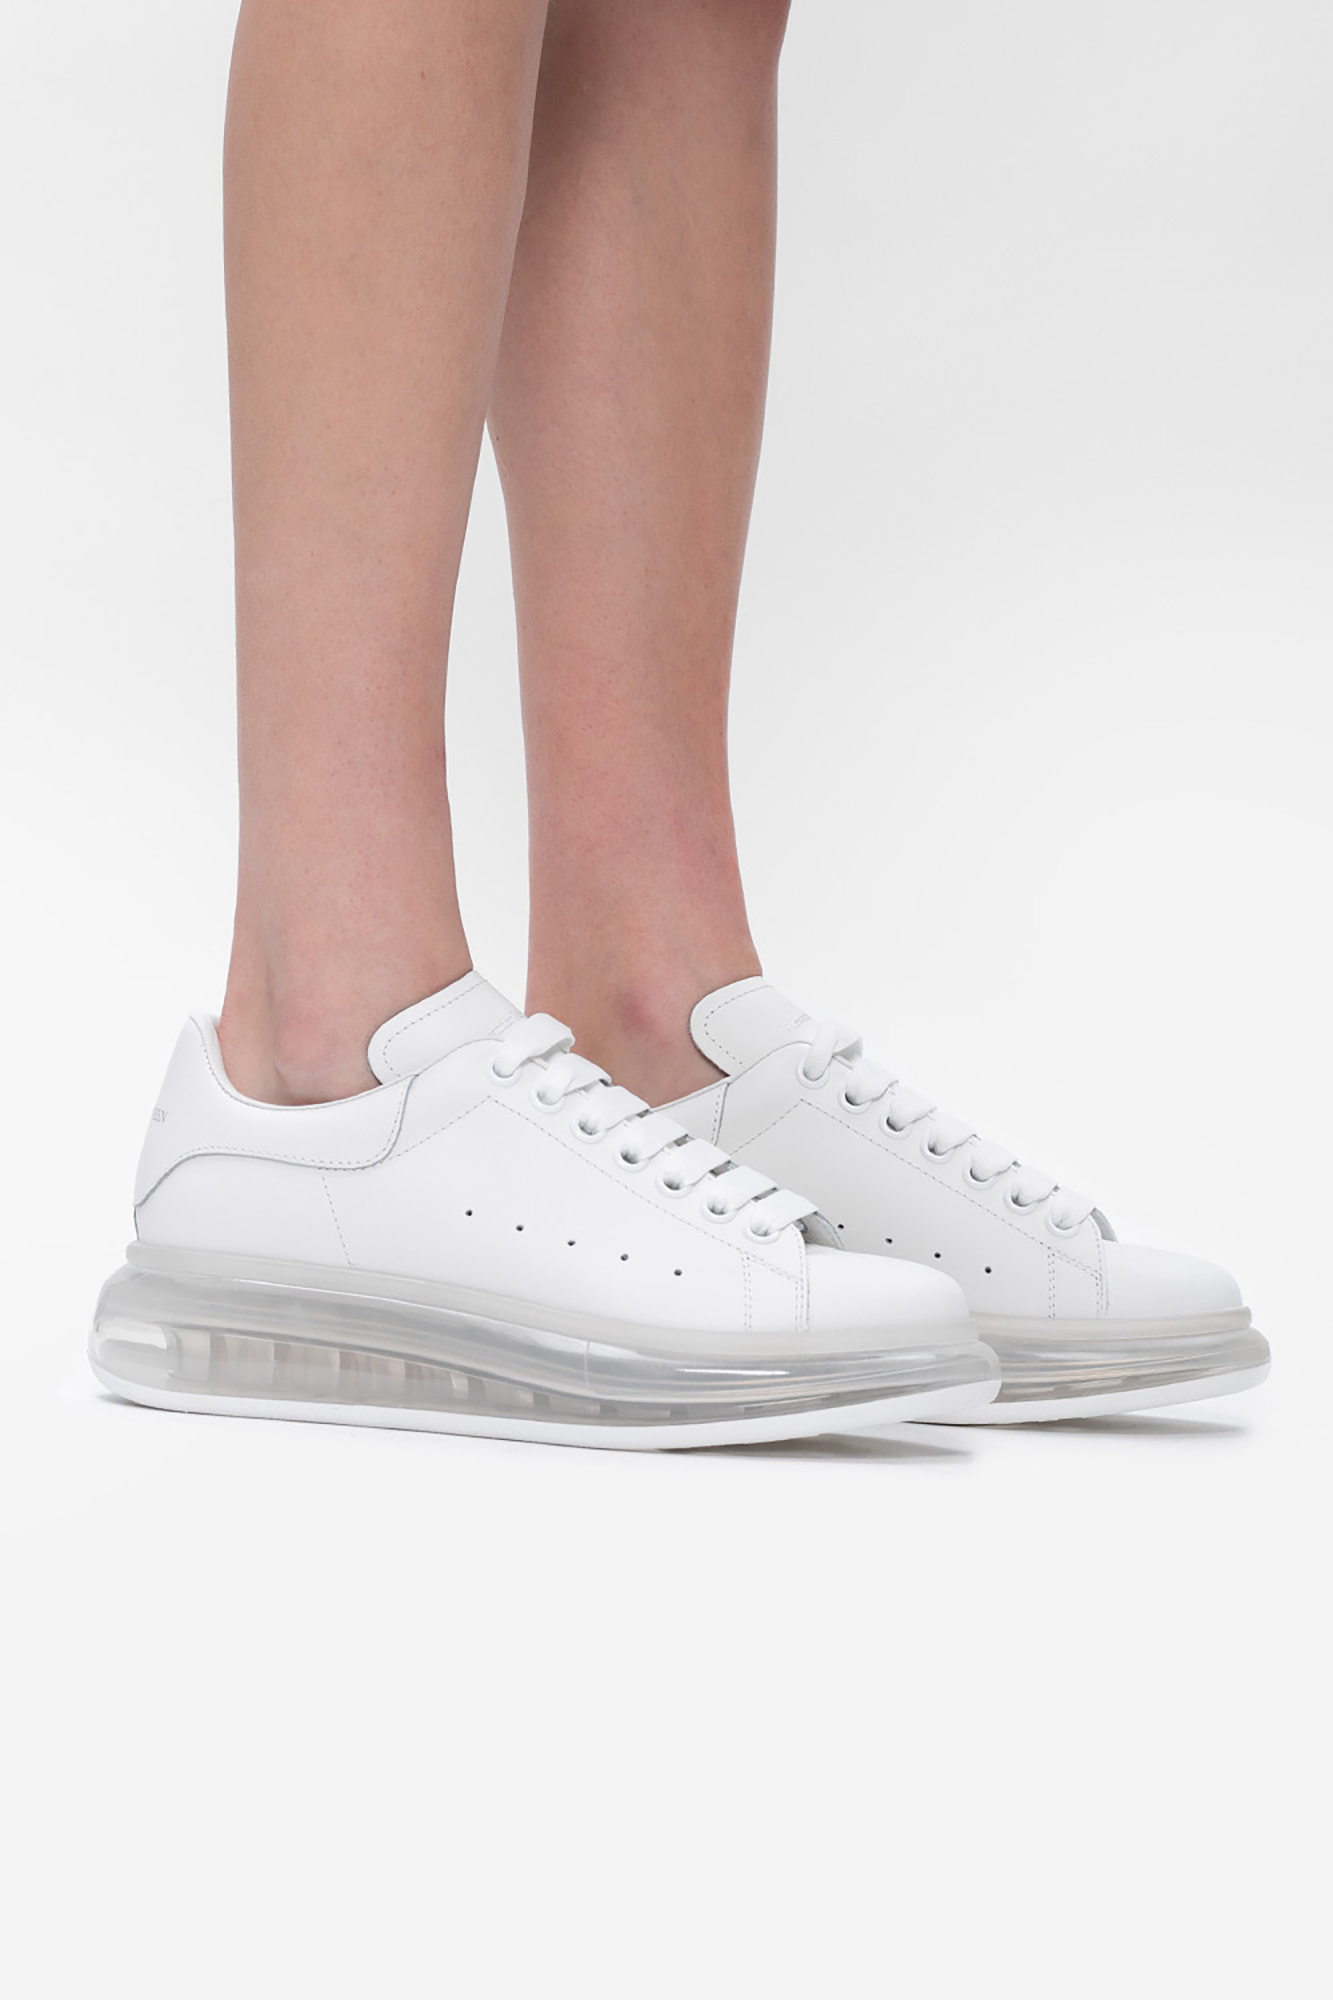 Alexander McQueen ‘Larry’ sneakers | Women's Shoes | Vitkac